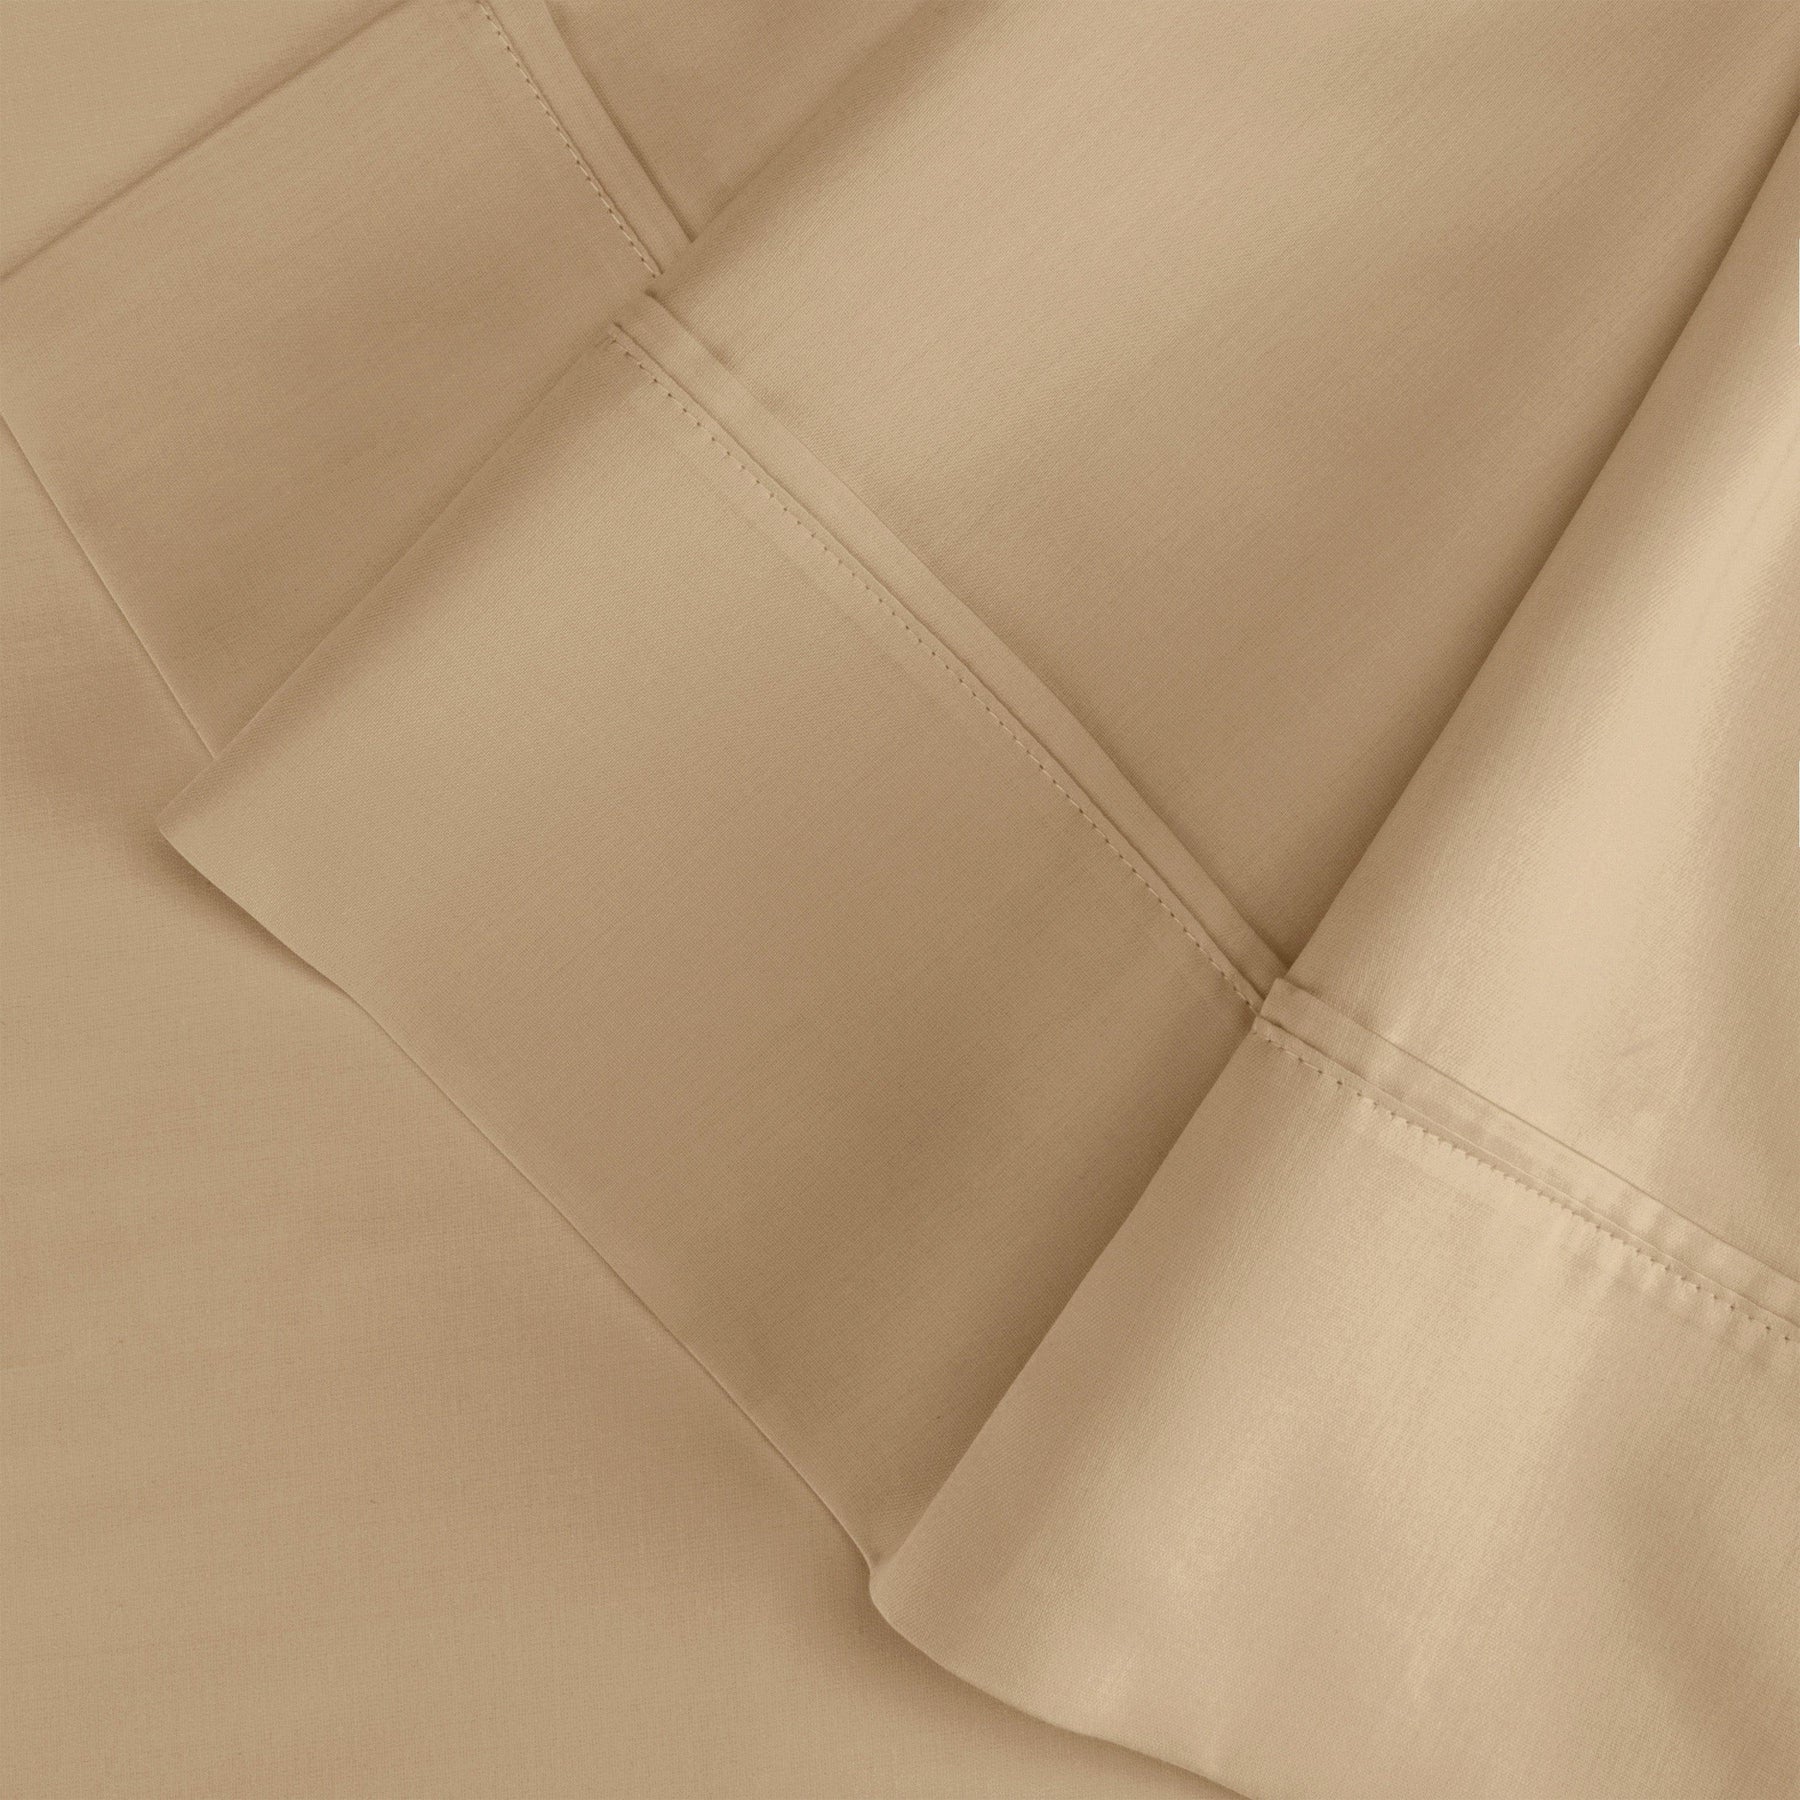  Wrinkle Resistant Egyptian Cotton 2-Piece Pillowcase Set -  Tan